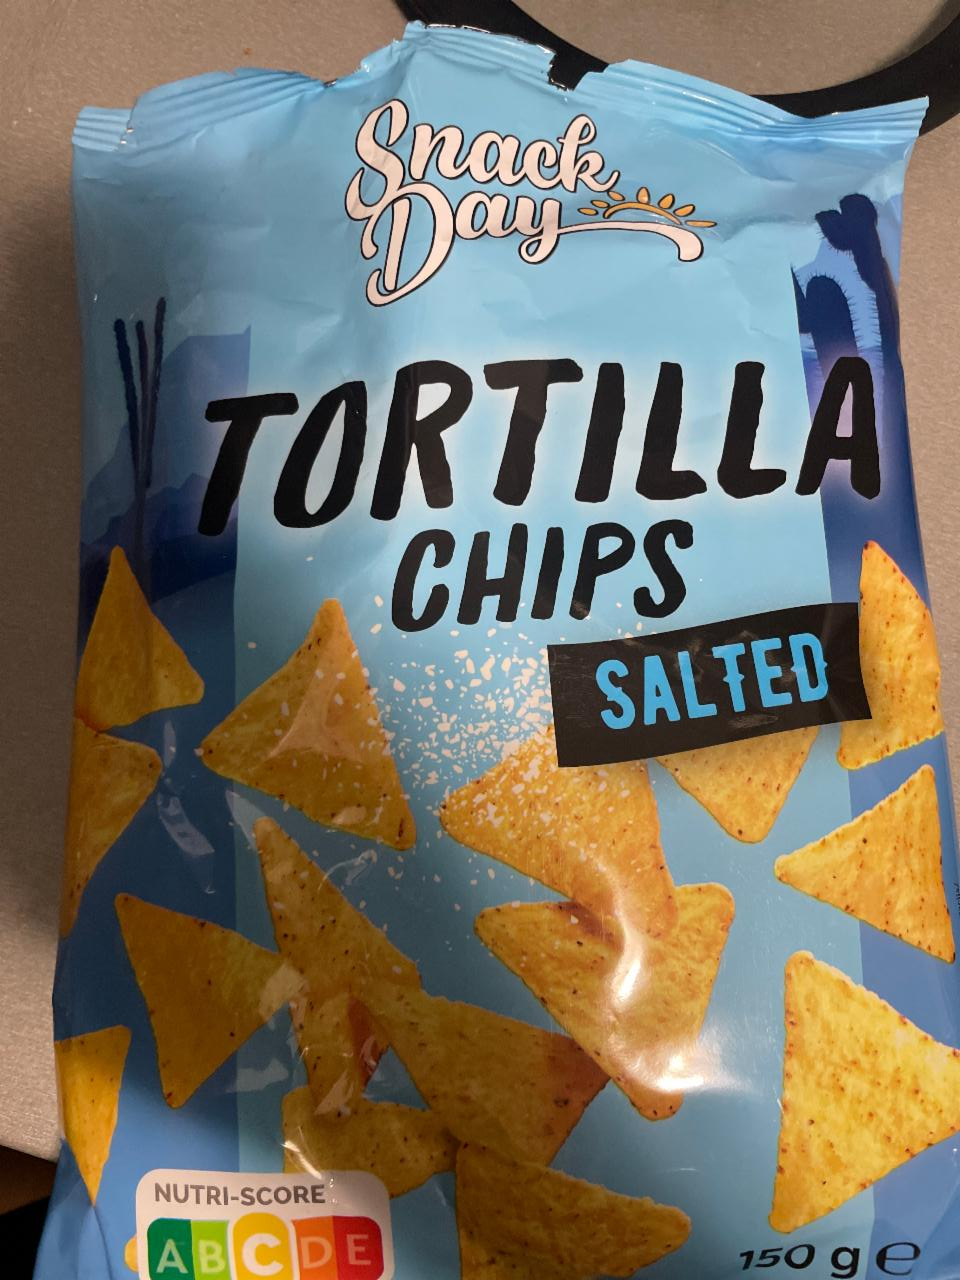 kalorie, salted nutriční Day Snack hodnoty Tortilla - kJ a chips